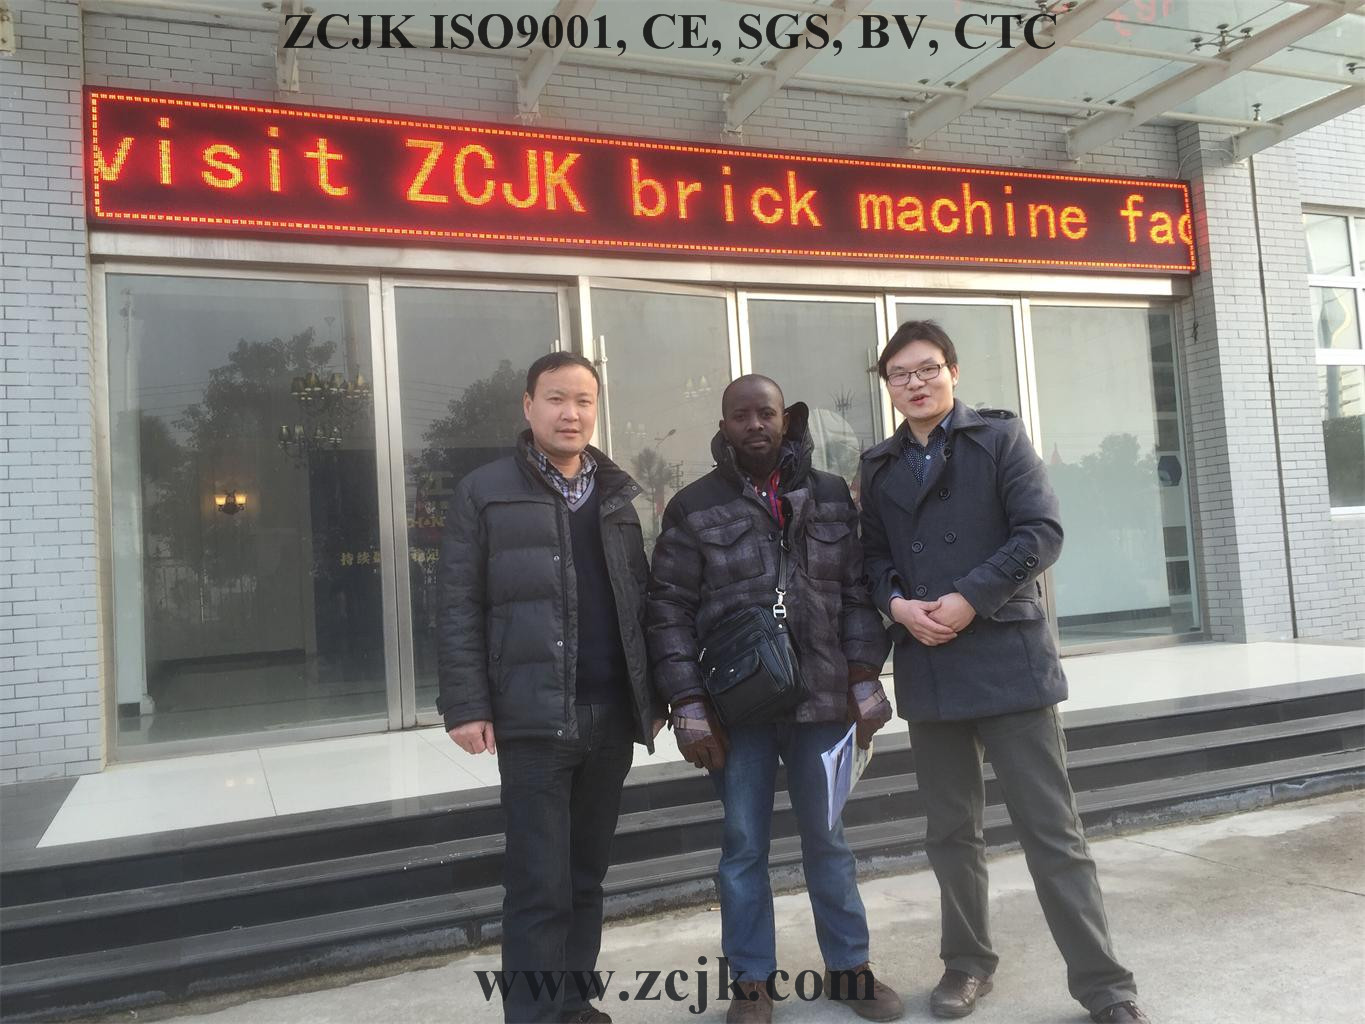 ZCJK Brick Machine Uganda Customer 20160115 (8)